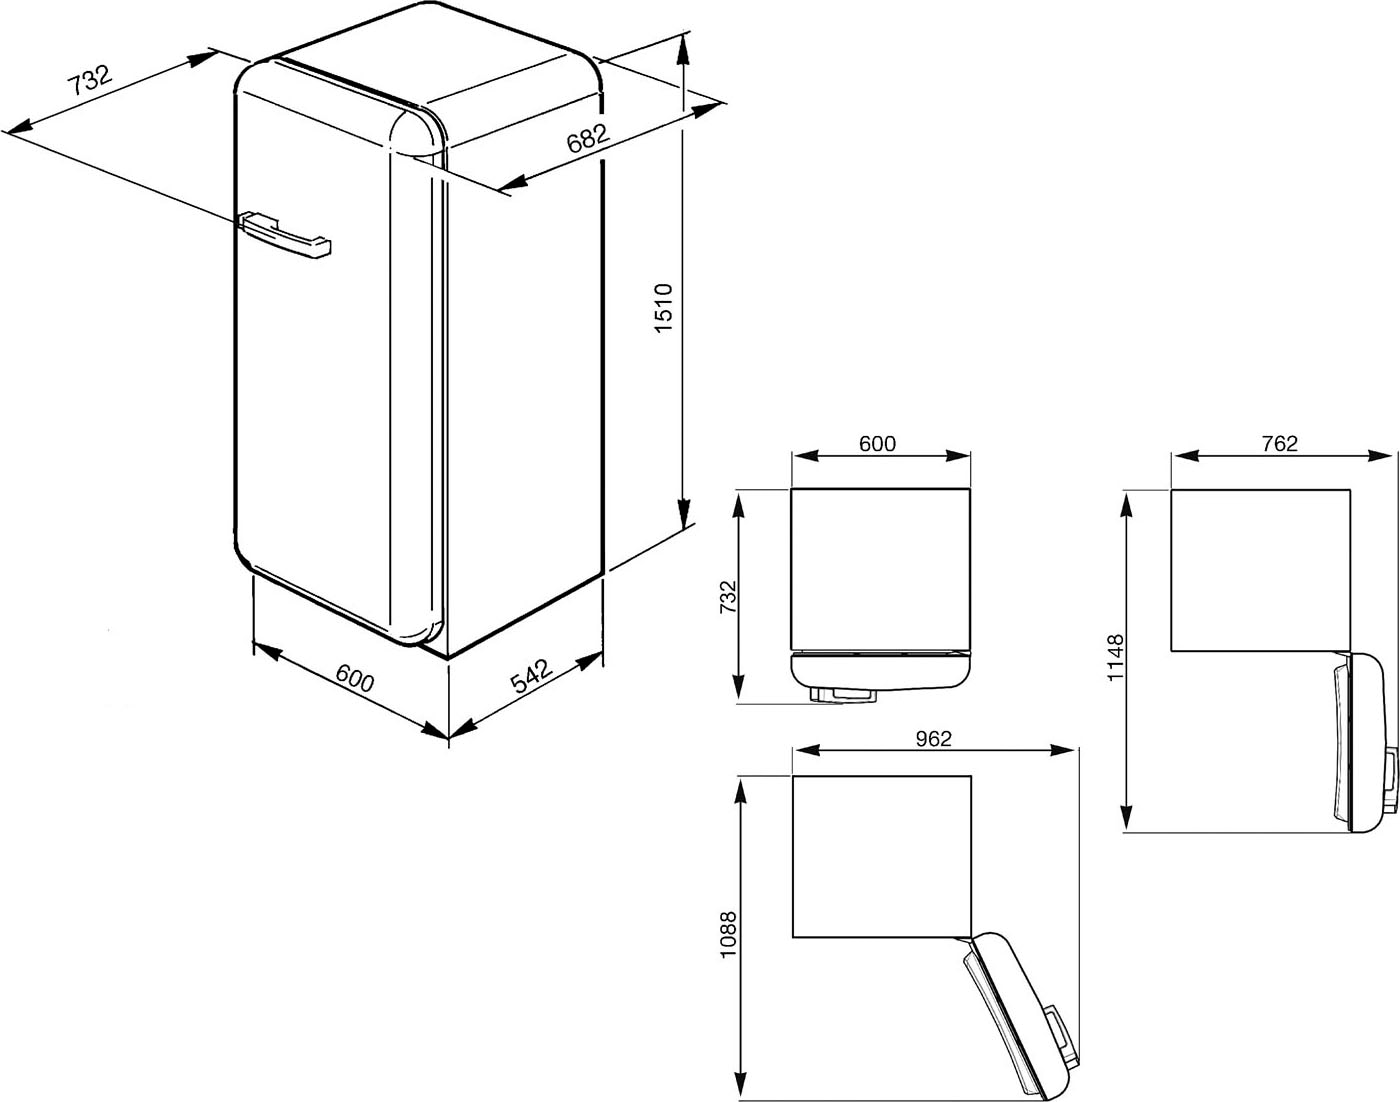 Smeg Kühlschrank »FAB28_5«, FAB28RDEG5, 150 cm hoch, 60 cm breit jetzt  kaufen bei OTTO